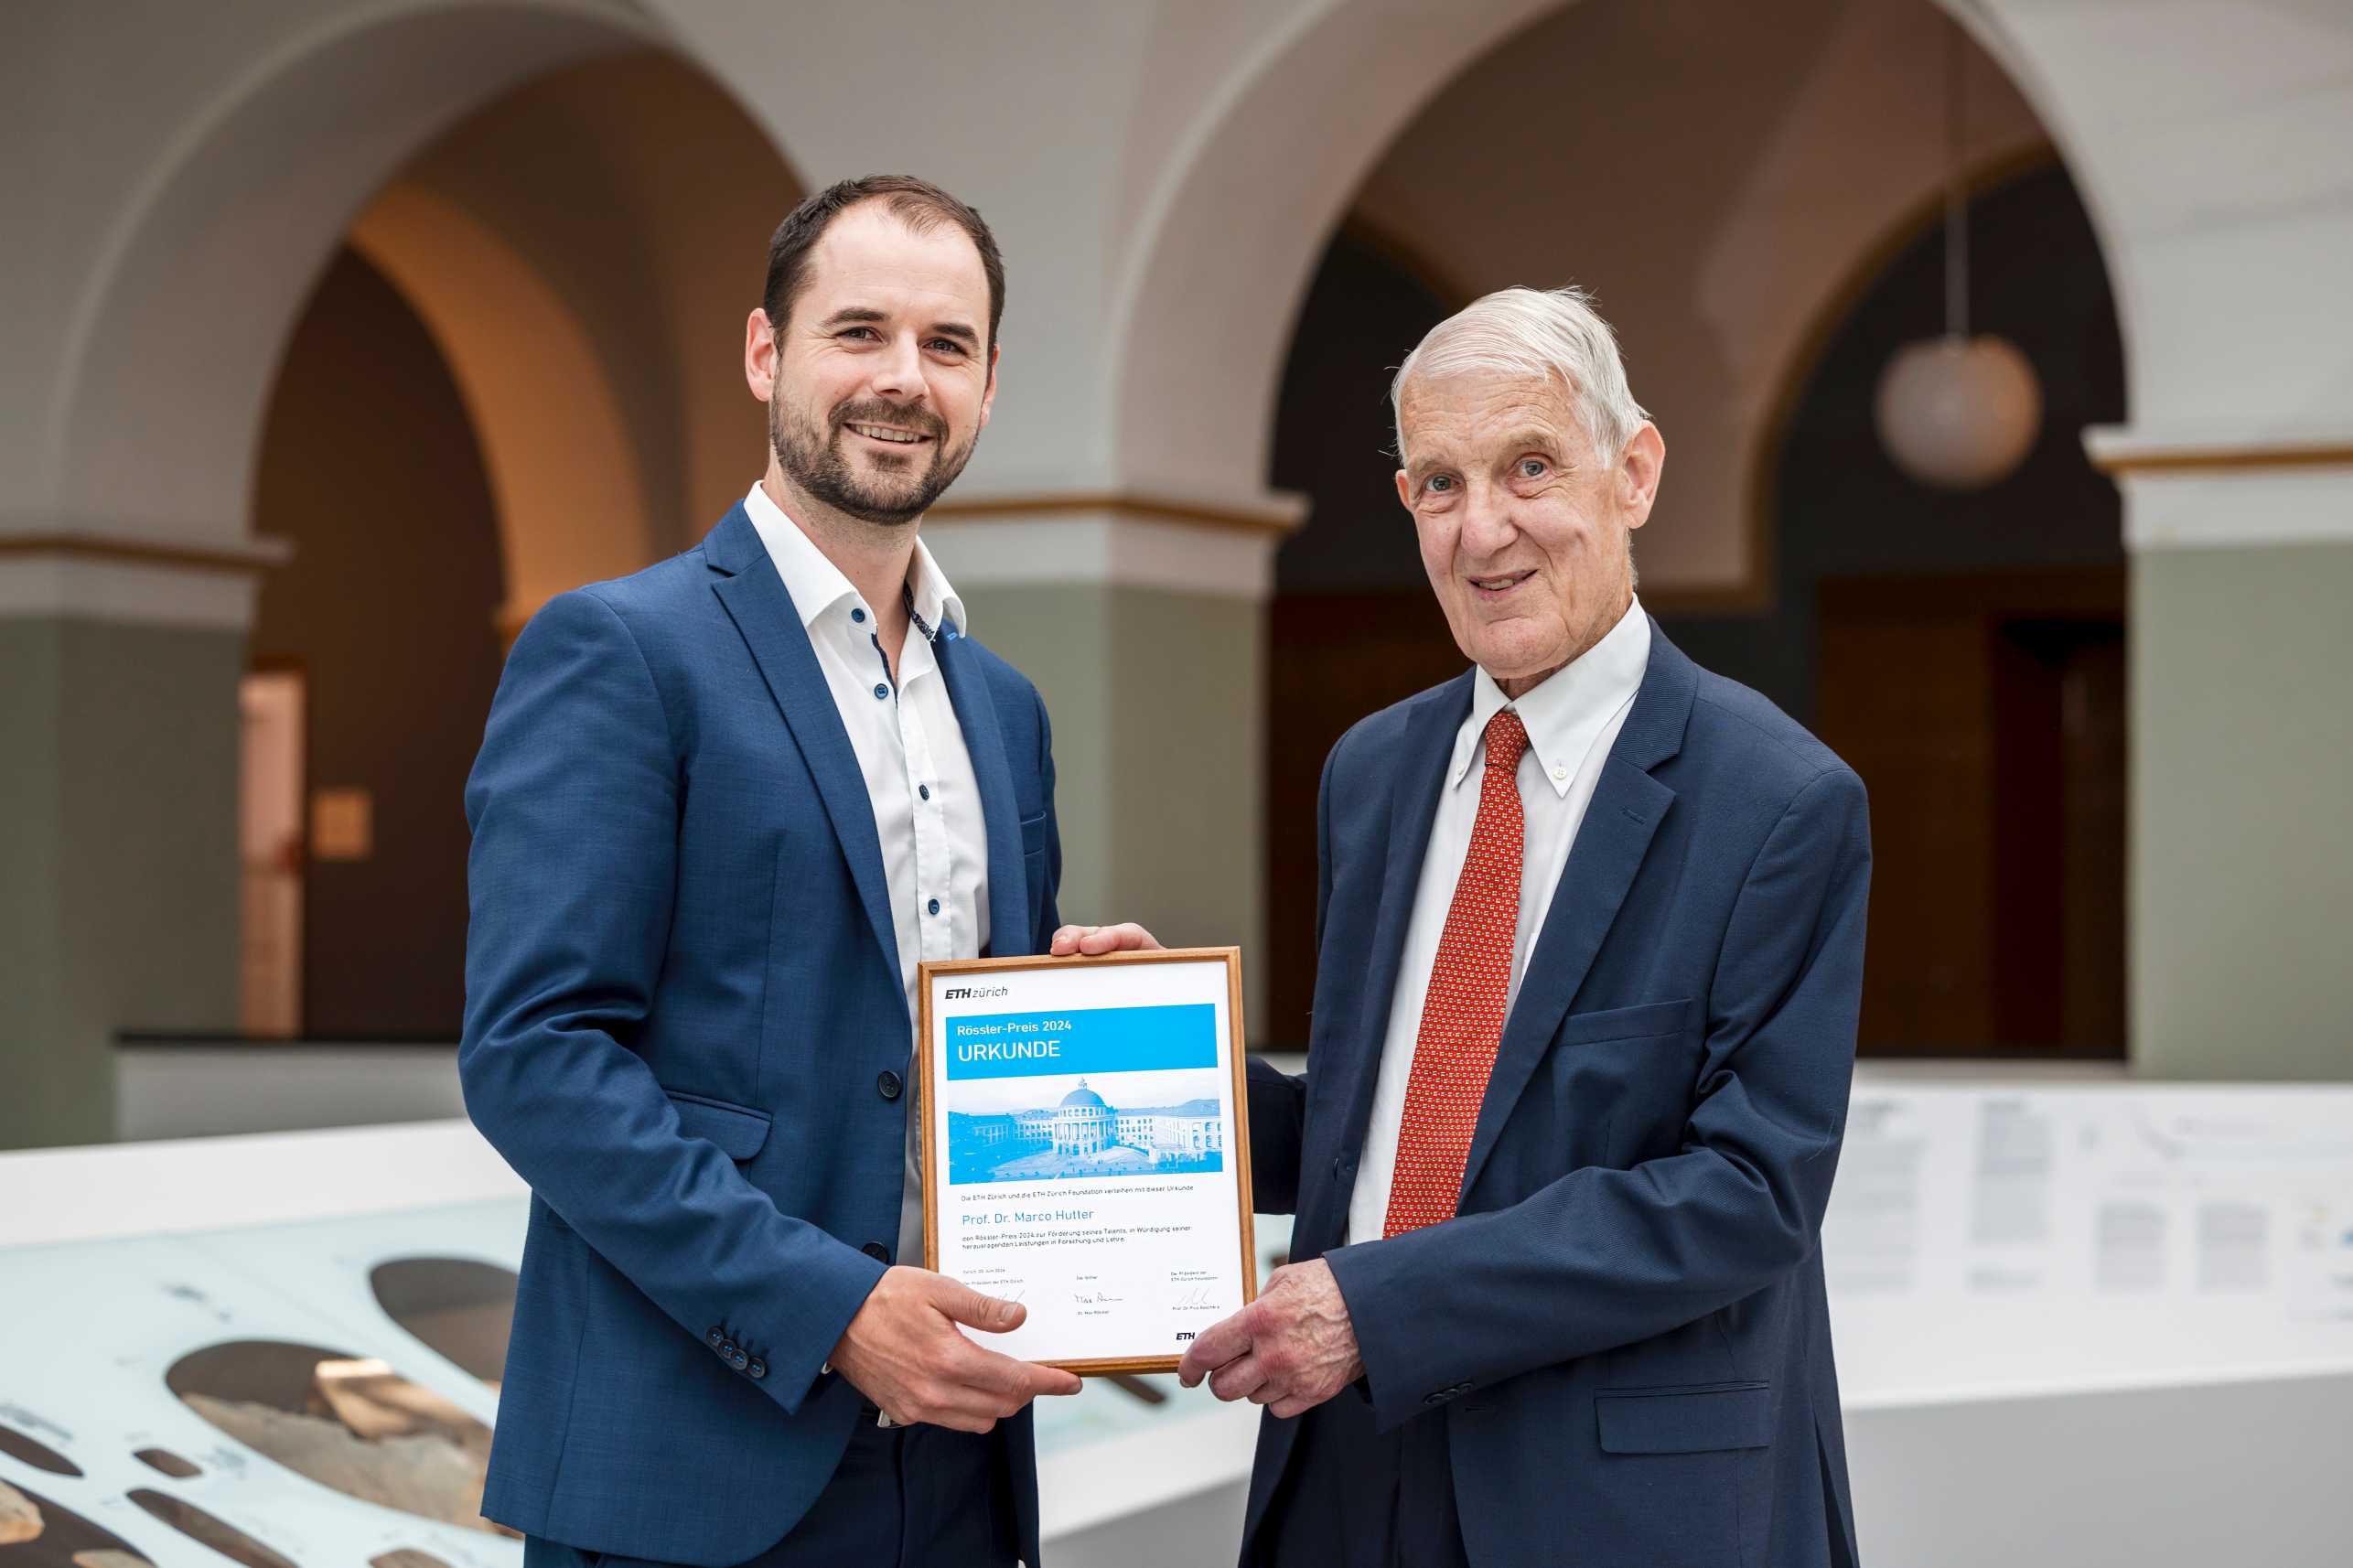 Marco Hutter receives the Rössler Prize certificate from Max Rössler